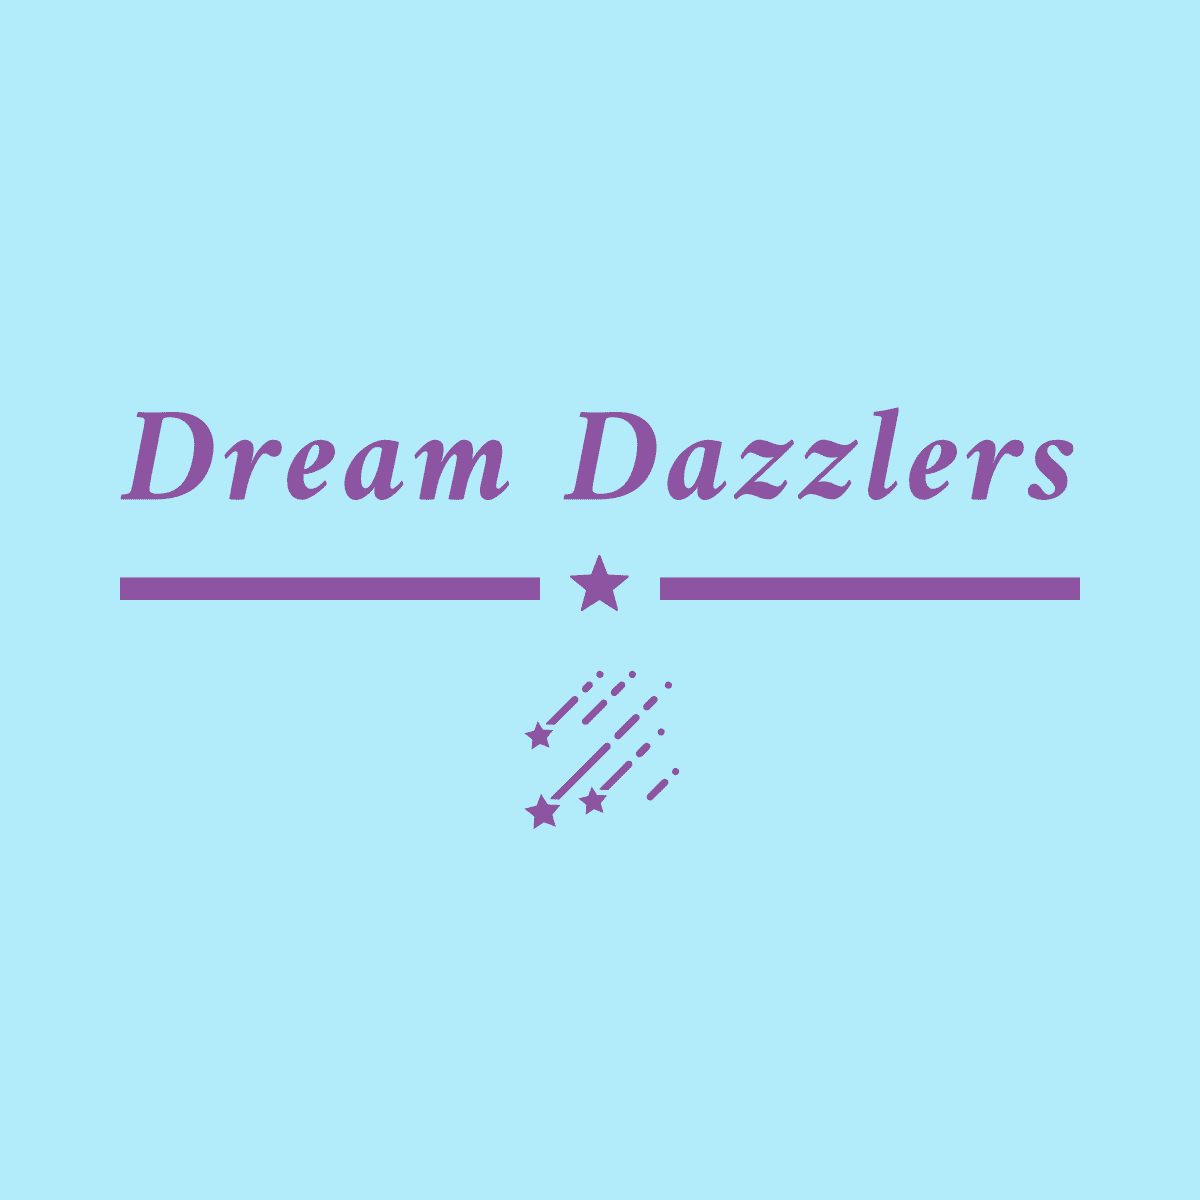 Dream Dazzlers